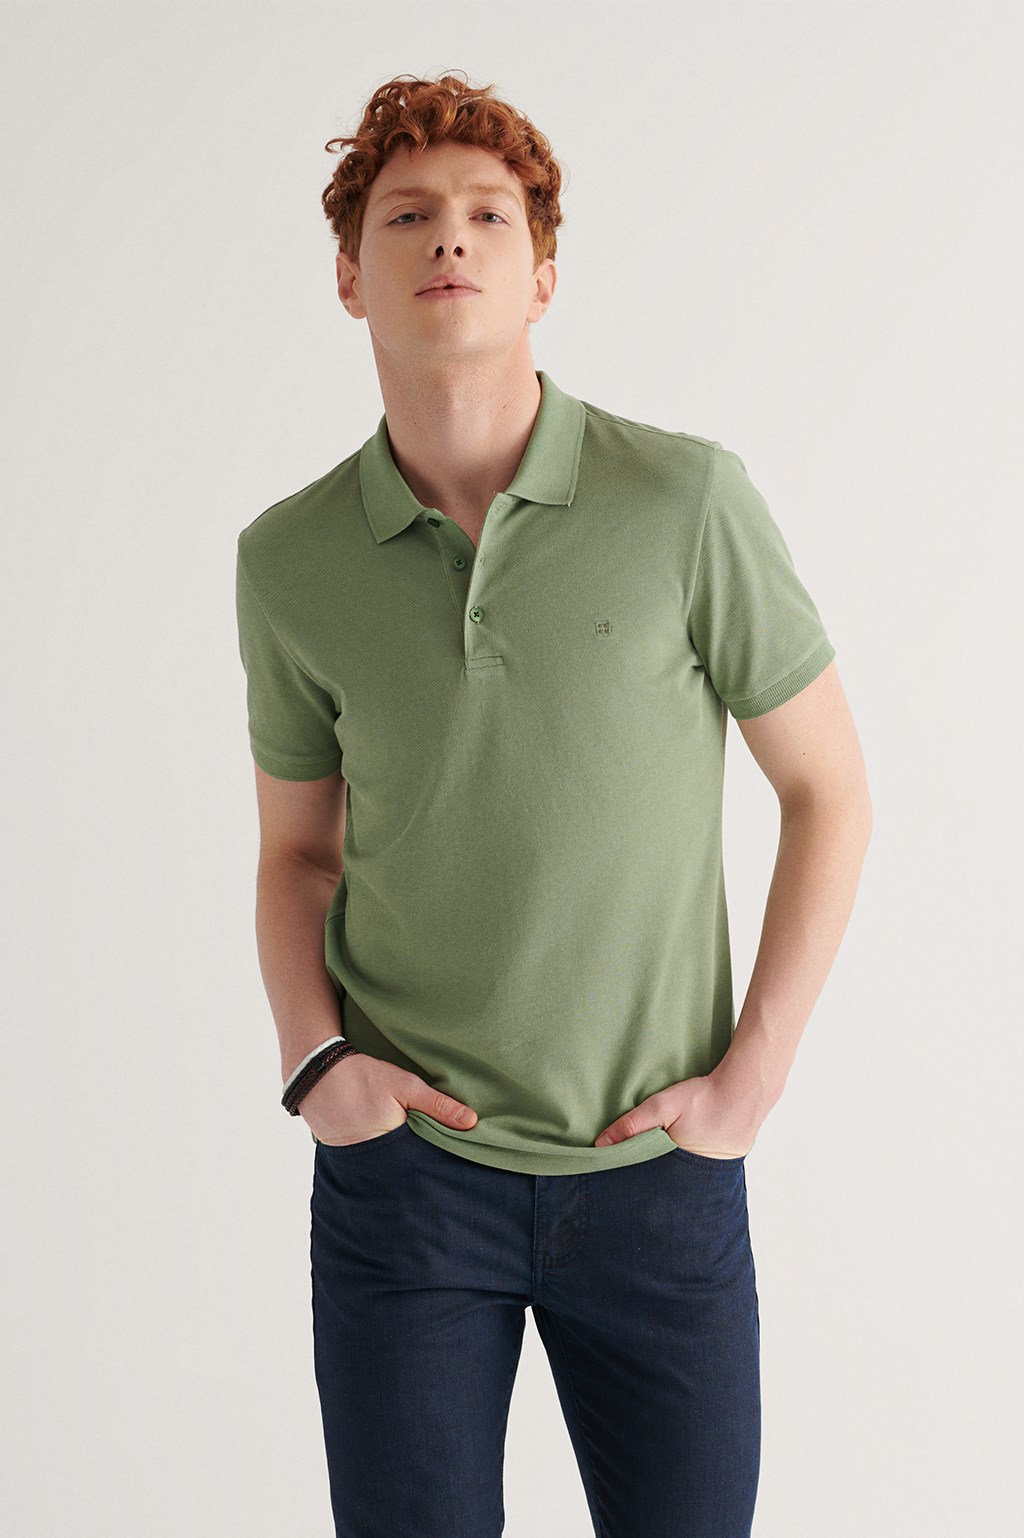 Nil Yeşili Polo Yaka Düz T-Shirt E001004-132 - AVVA